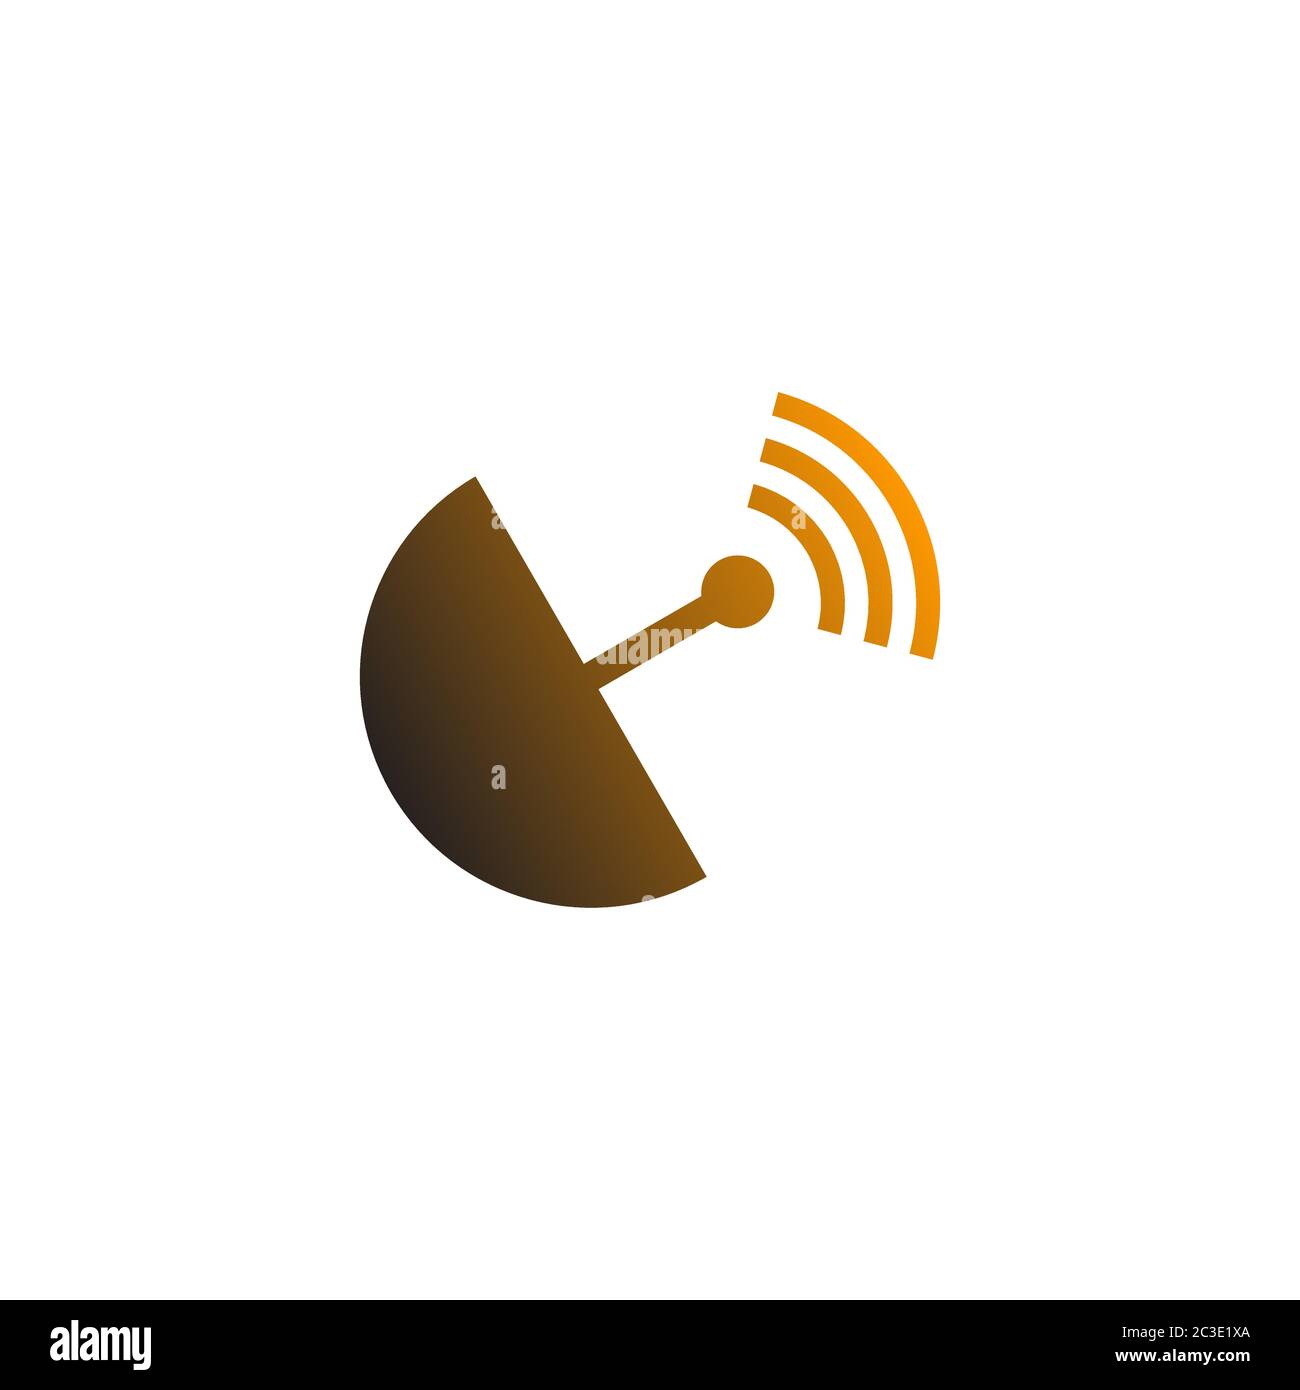 Modello di progettazione del logo wireless dell'antenna del segnale del ricevitore, isolato su sfondo bianco. Illustrazione Vettoriale